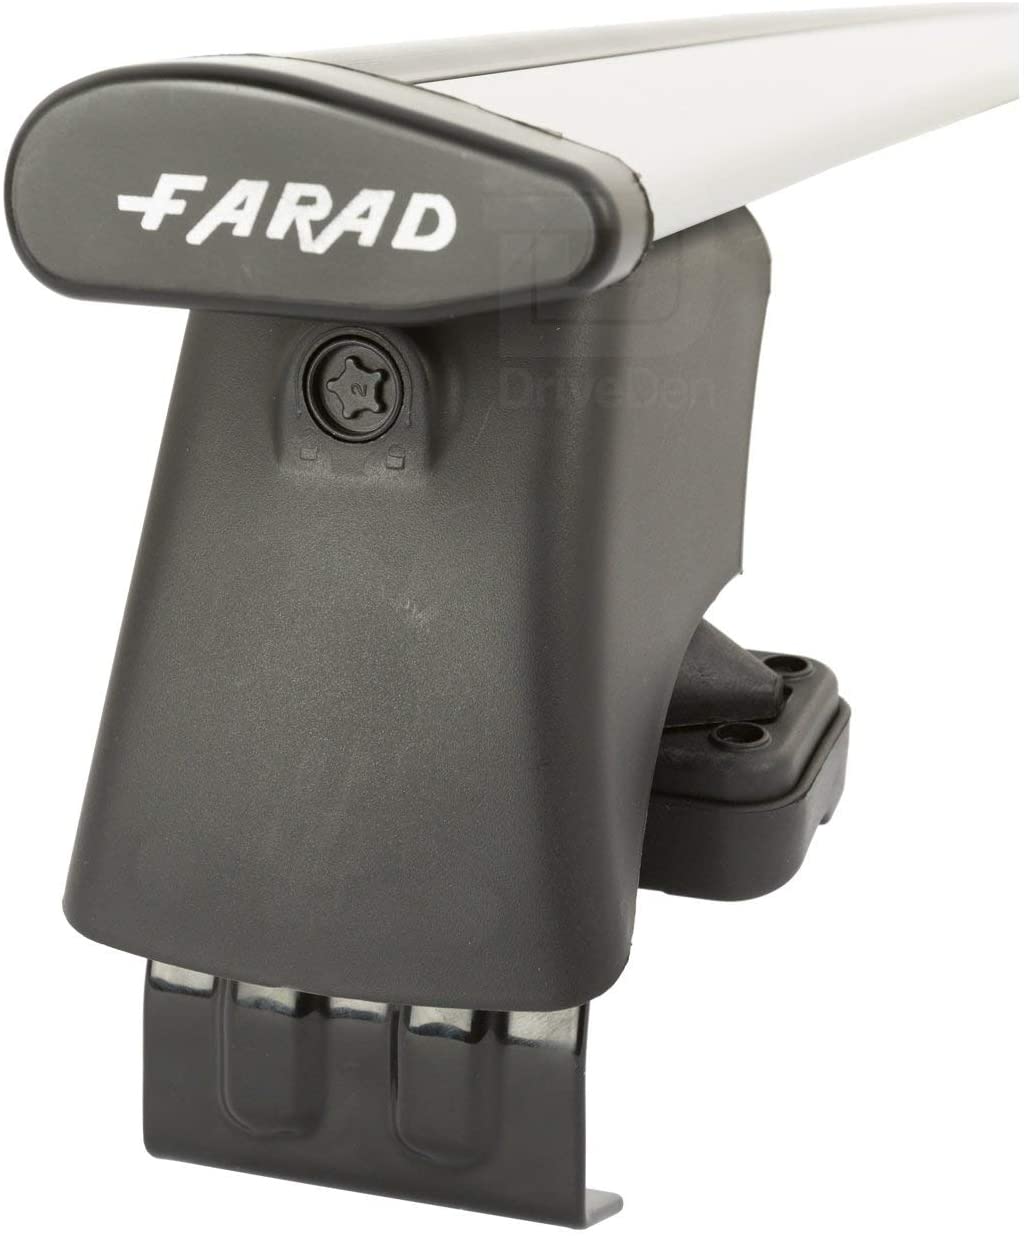 FARAD-Kit H2 per barre portatutto - Seat Ibiza 2009-2017 (senza corrimano)